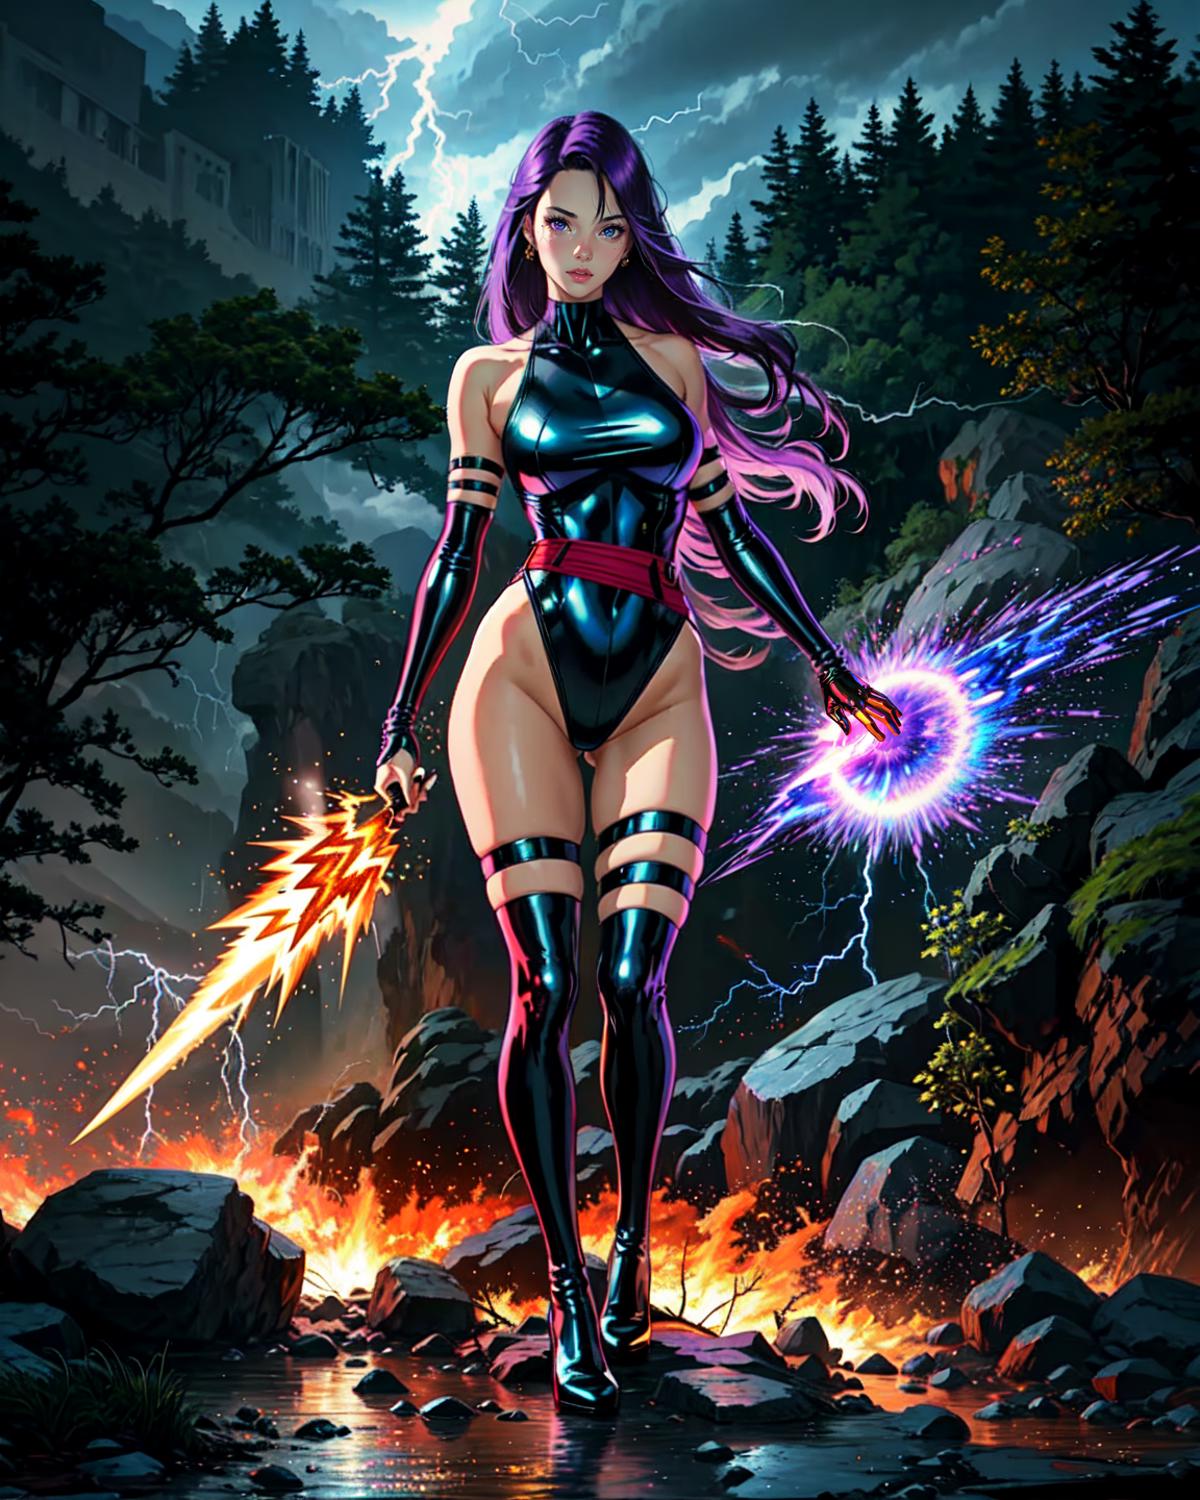 Psylocke/Betsy, Captain Britain (X-Men) LoRA image by MrHong